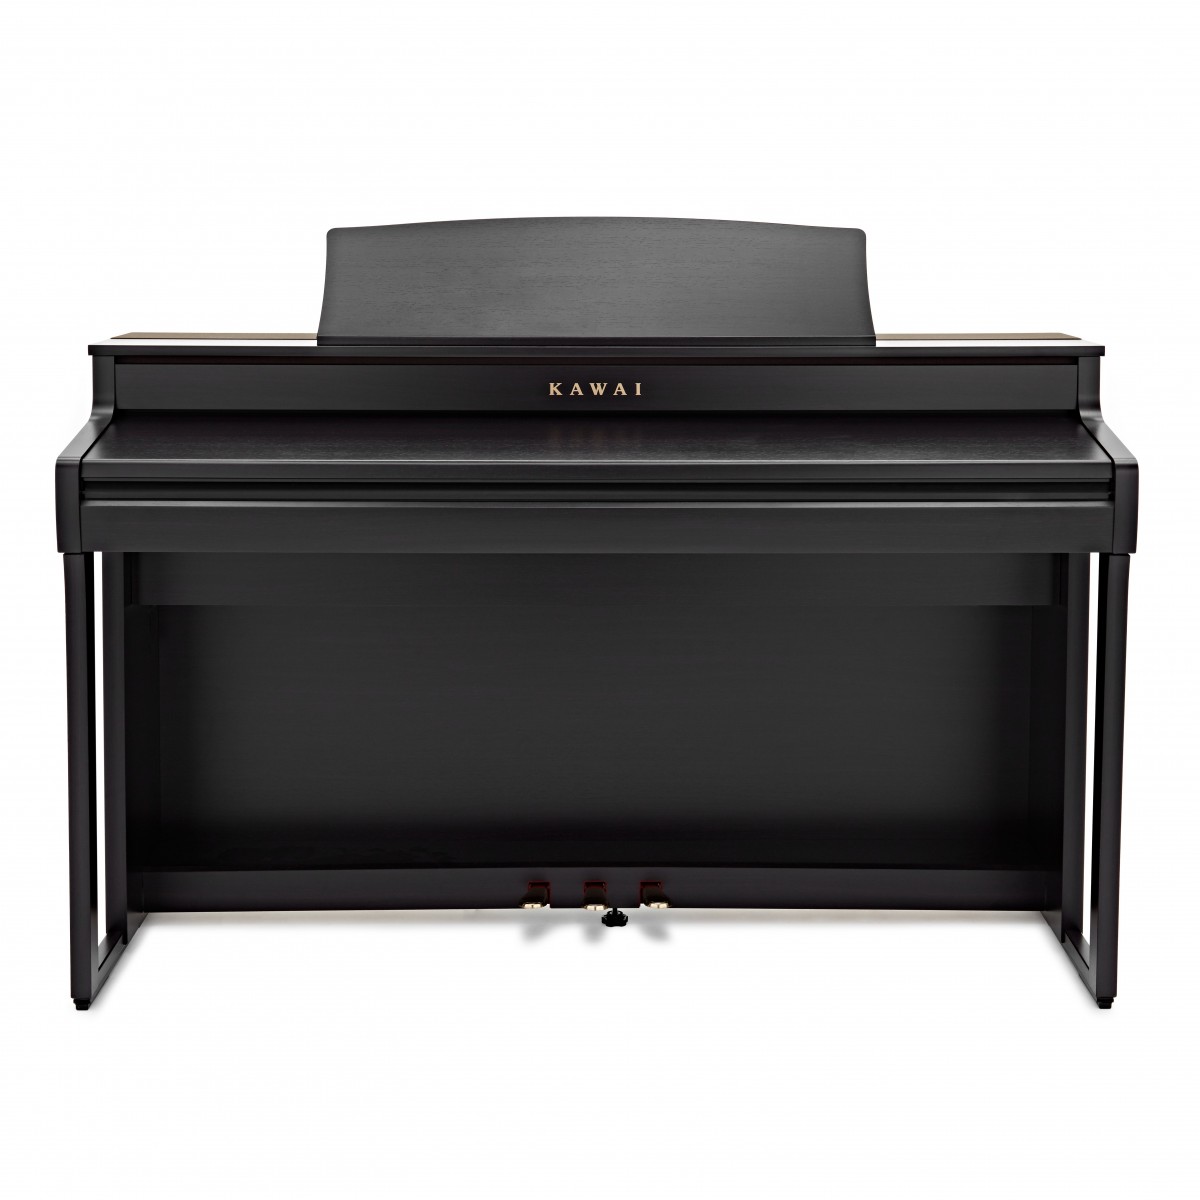 Цифровое пианино KAWAI CA501R